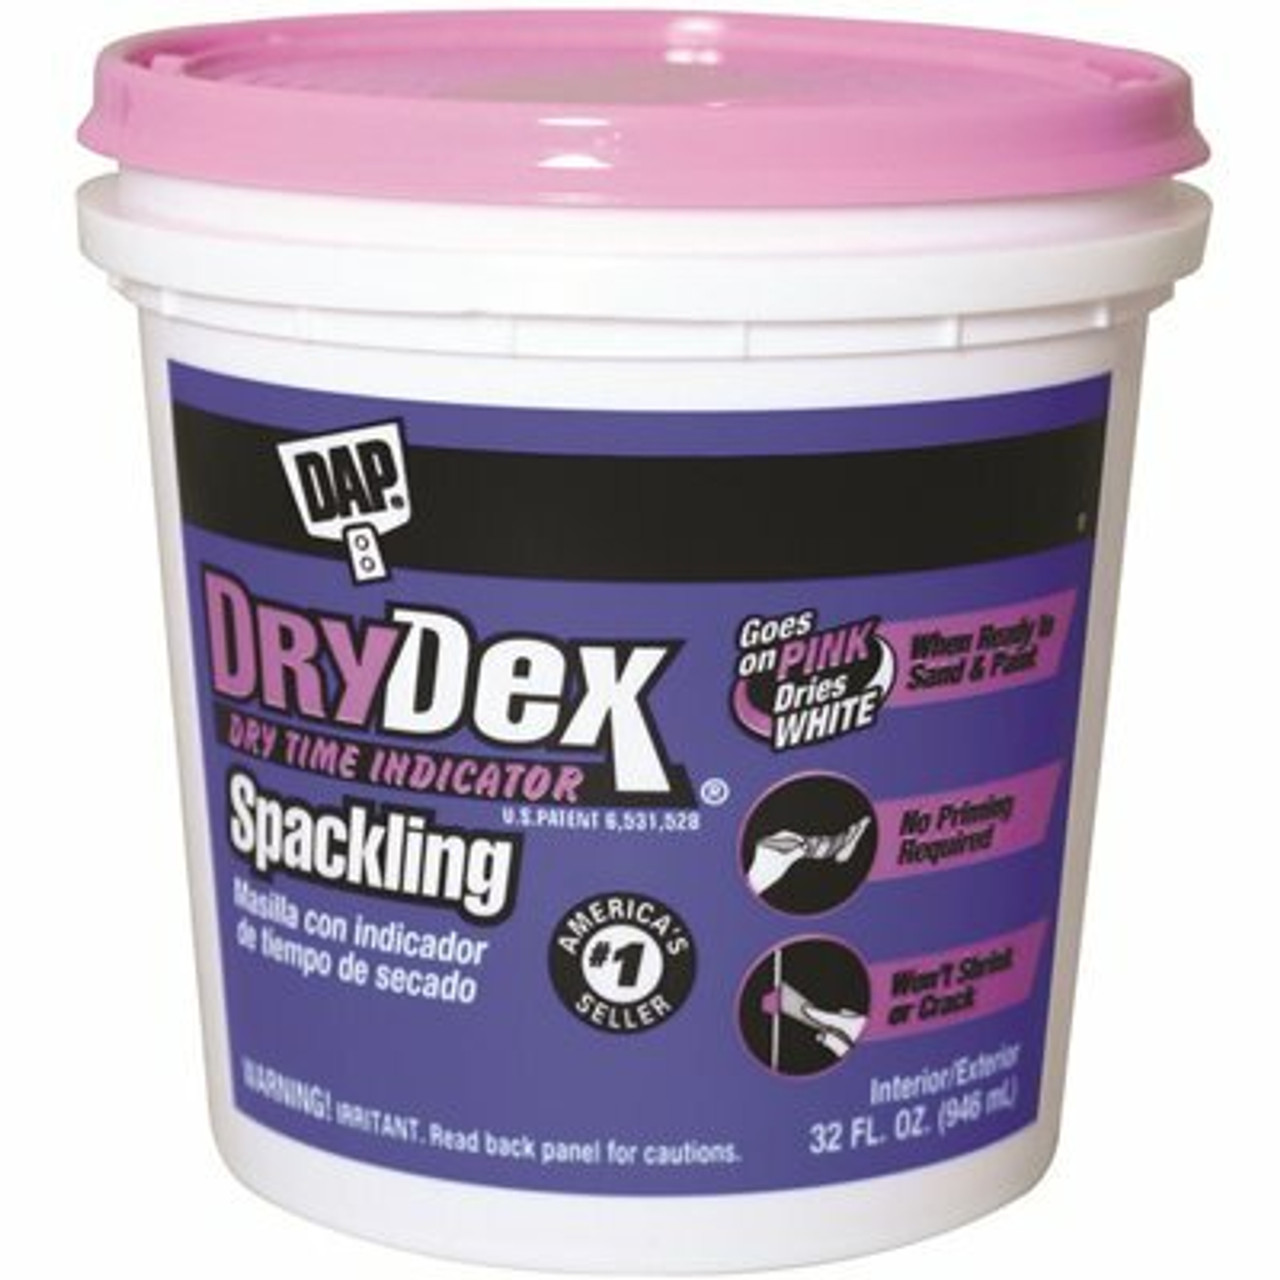 Dap Drydex 32 Oz. Dry Time Indicator Spackling Paste